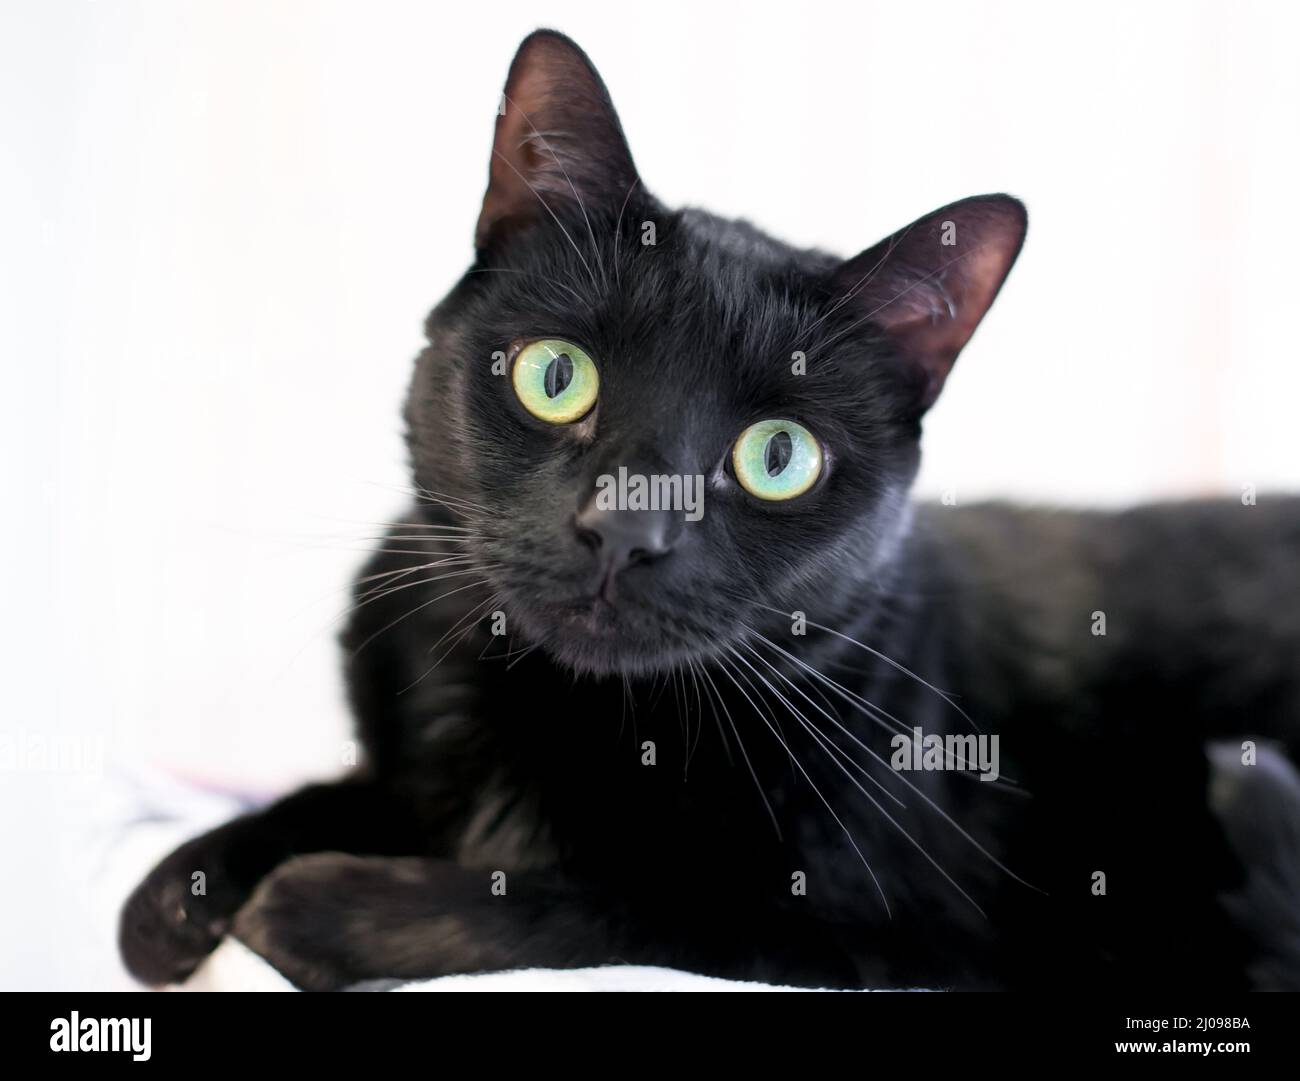 Un gato shorthair negro con grandes ojos verdes mirando la cámara con una inclinación de cabeza Foto de stock